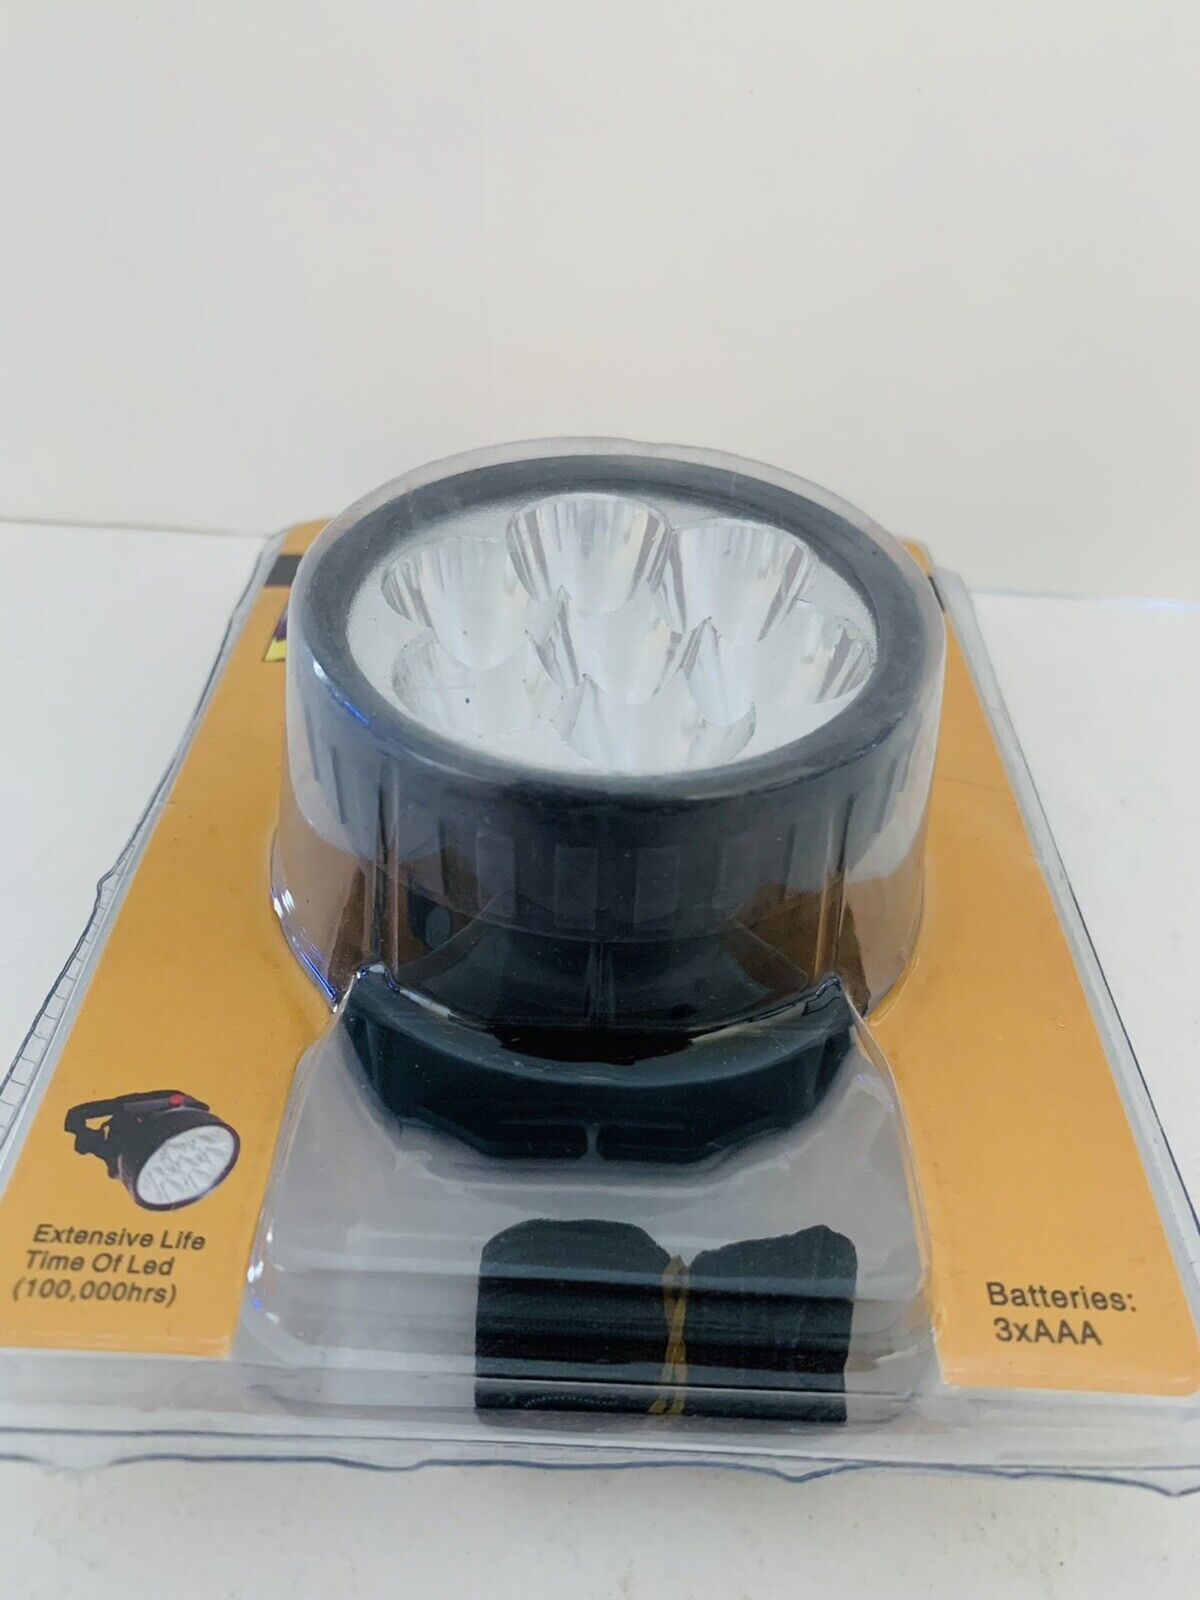 FamilyMaid Ultra Bright LED Headlight Head and 50 similar items